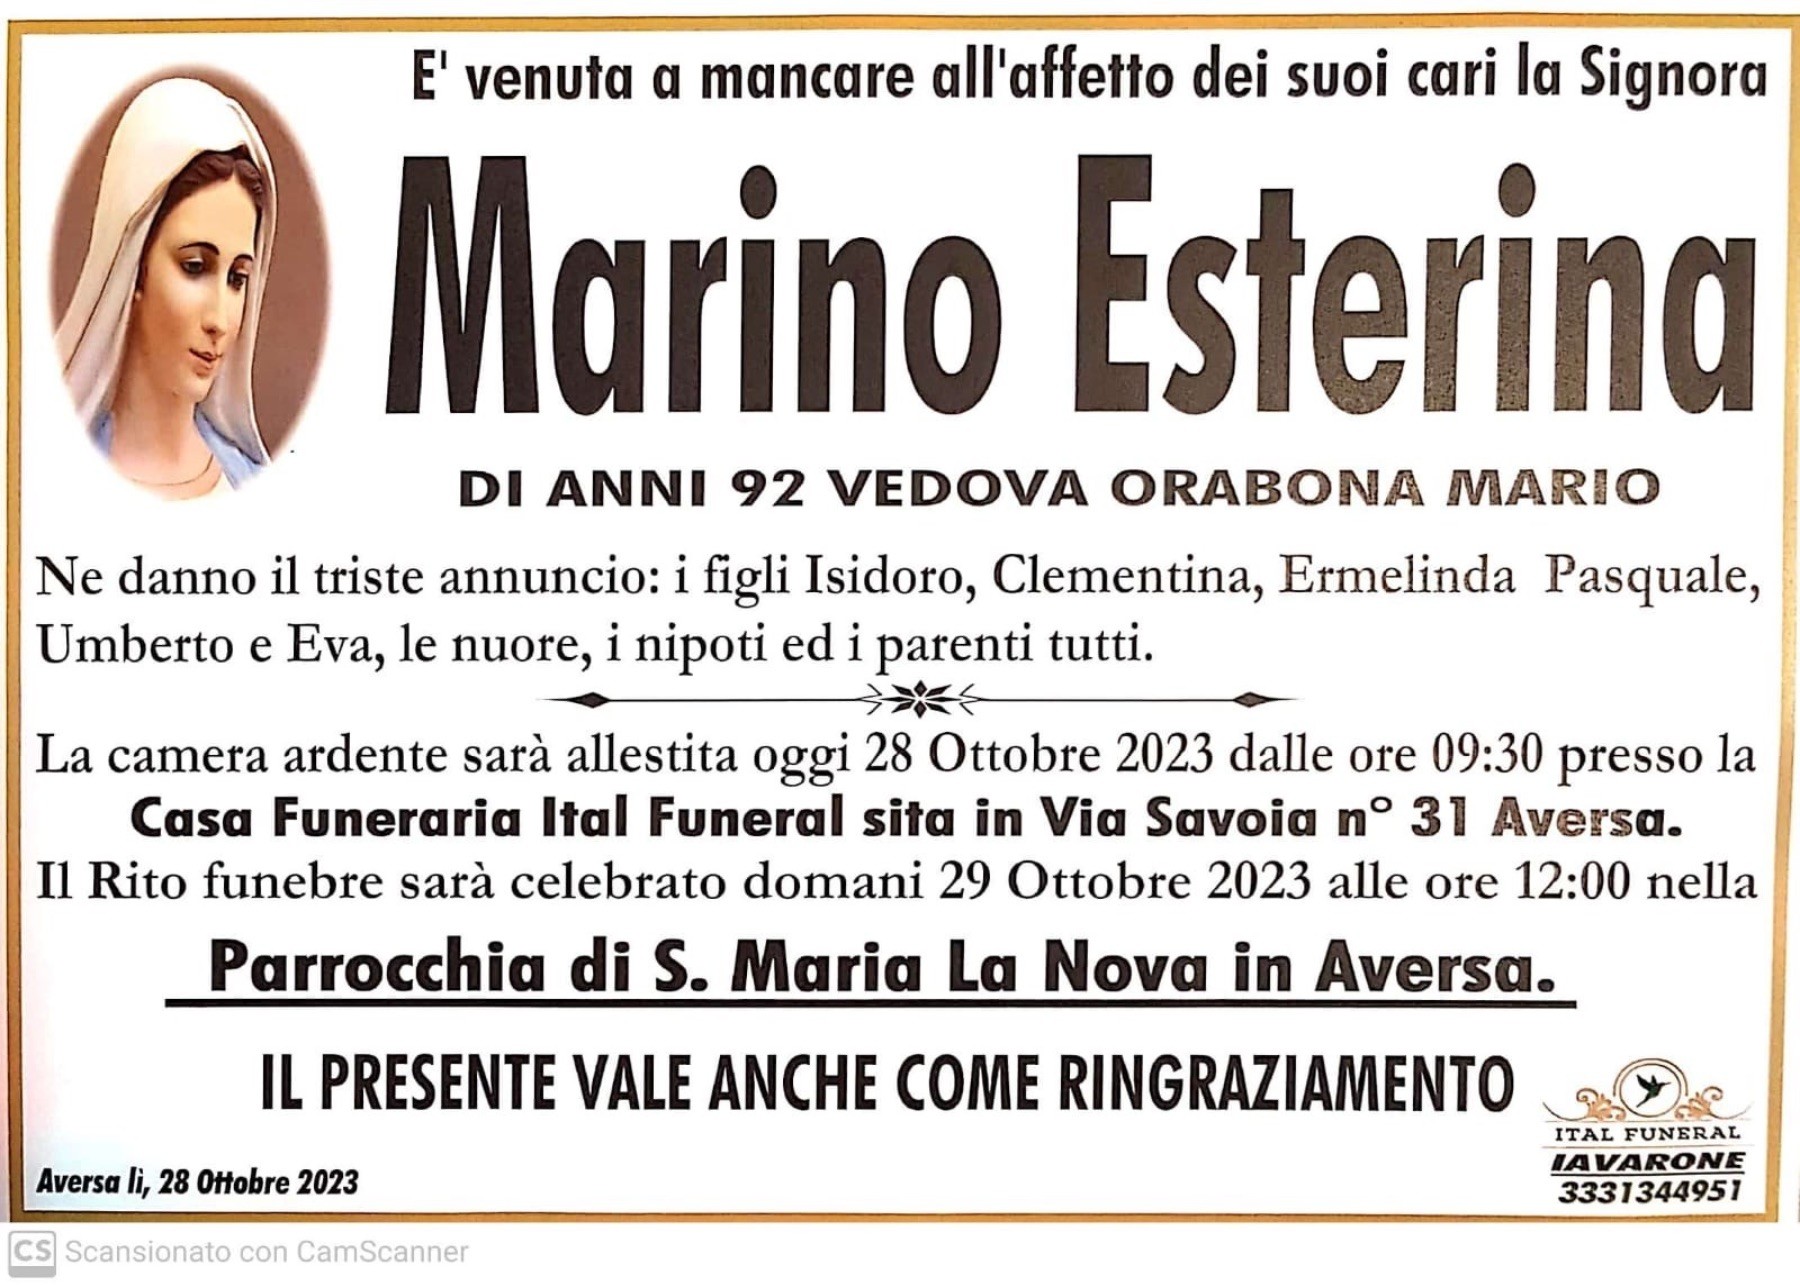 Marino Esterina